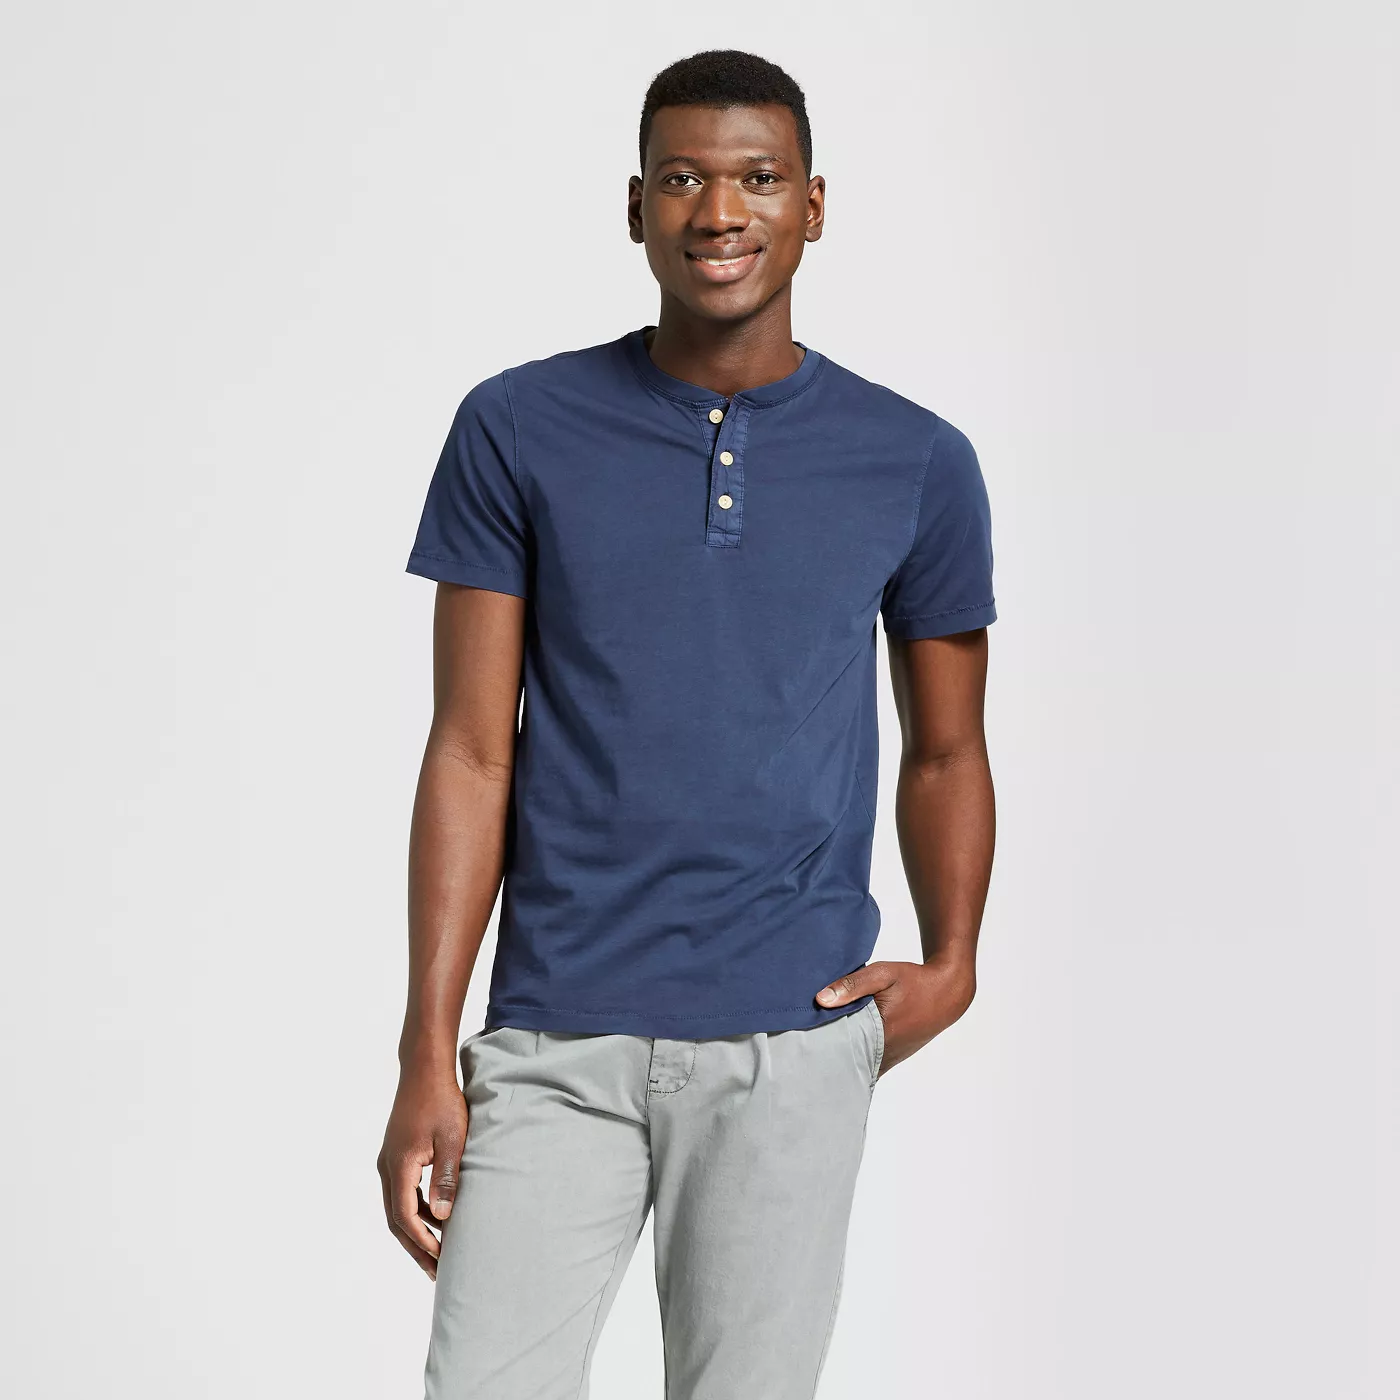 Man outfit inspiration Regular Fit Short Sleeve Henley Shirt - Goodfellow & Co